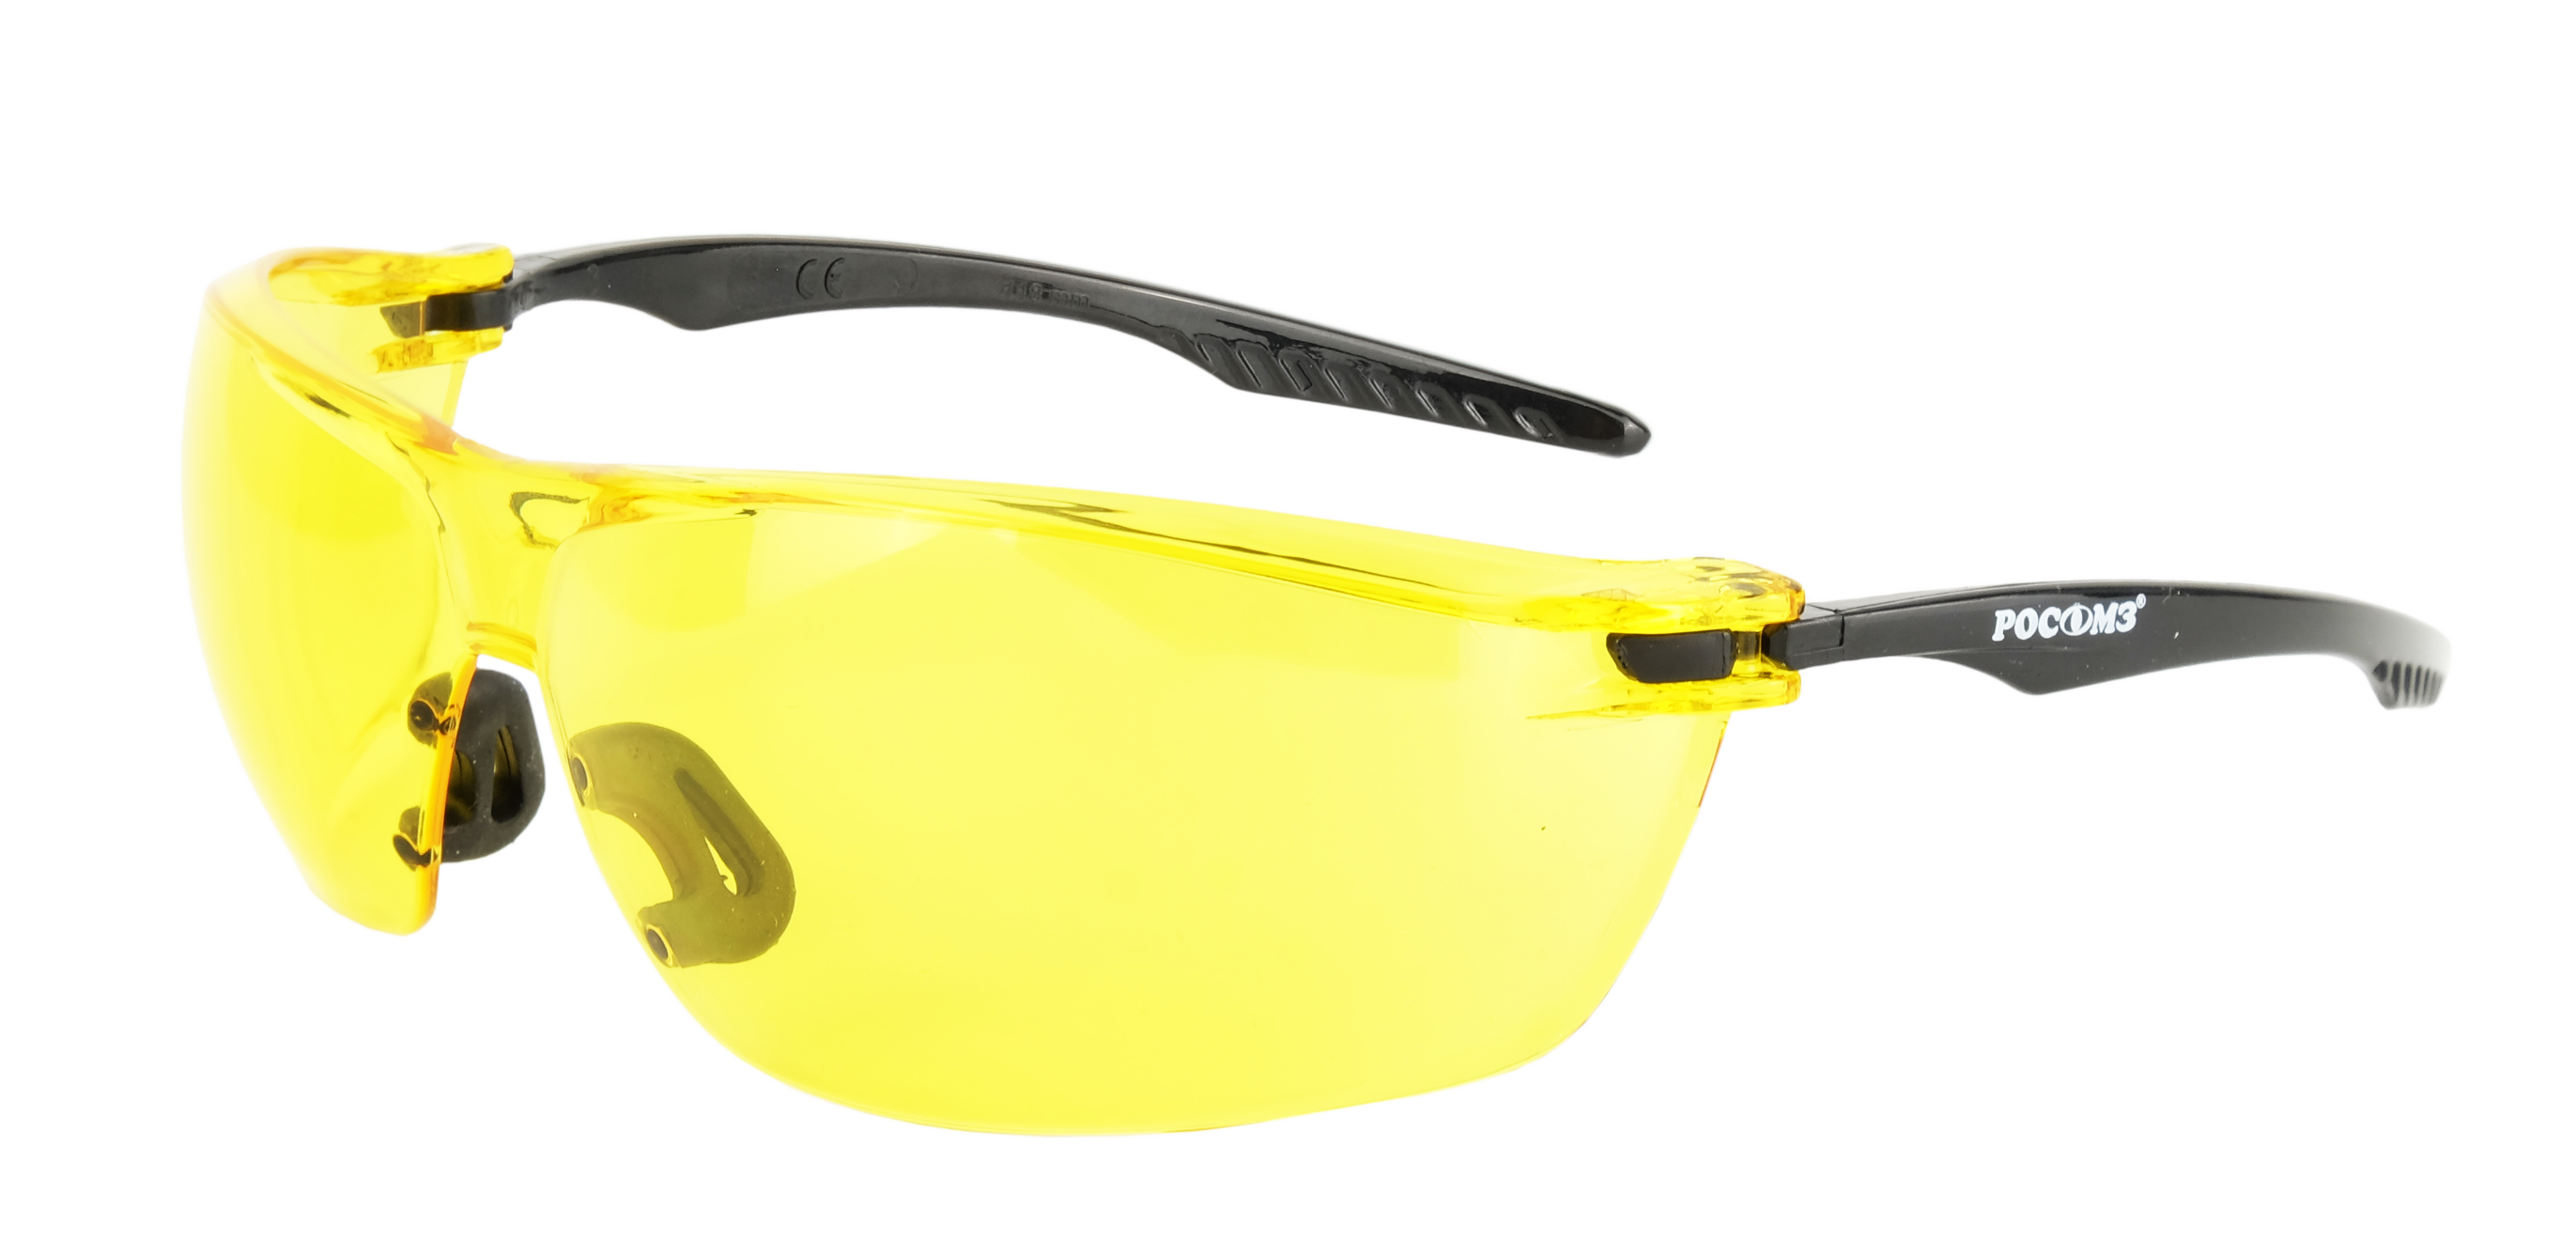 О88 SURGUT CRYSTALINE® (2-1,2 РС) очки защитные открытые с мягким носоупором